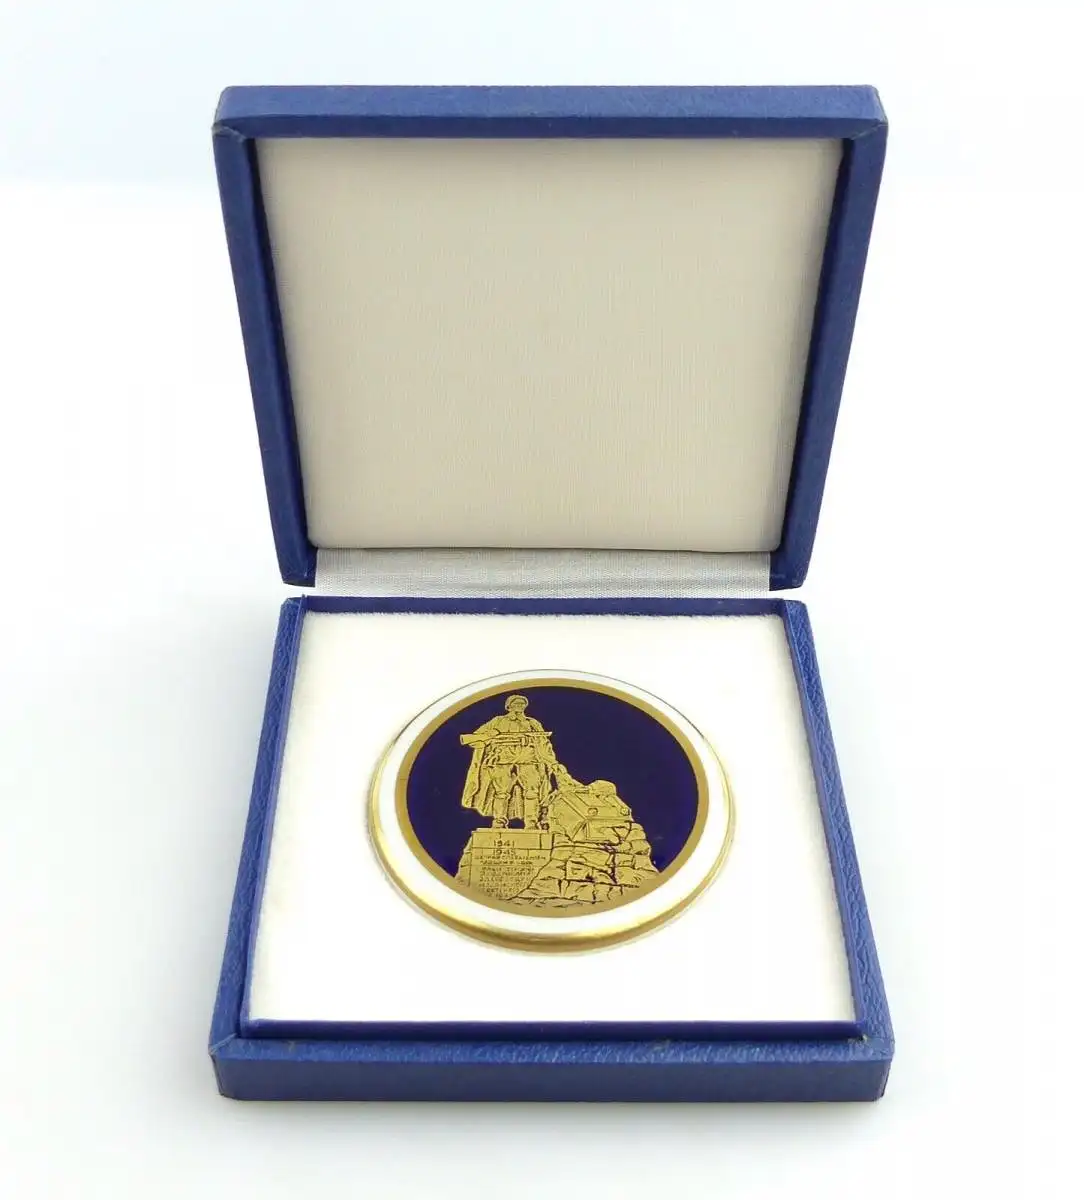 e11760 Weimarer Porzellan Medaille Ehrenmal mit russischem Soldaten in OVP